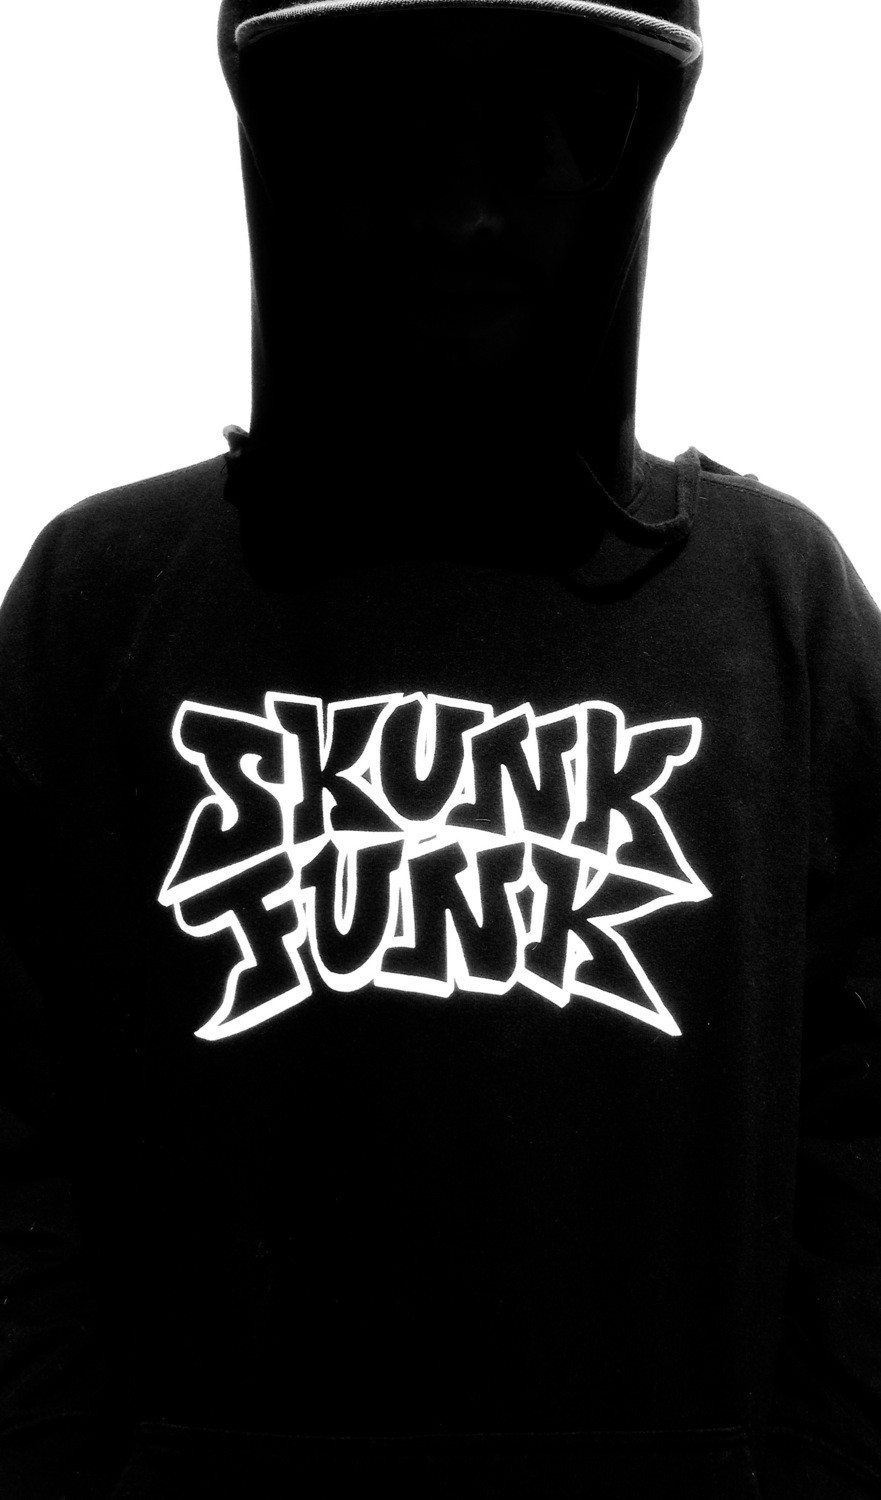 Skunk Funk Hoodies - Official Logo (White on Black)